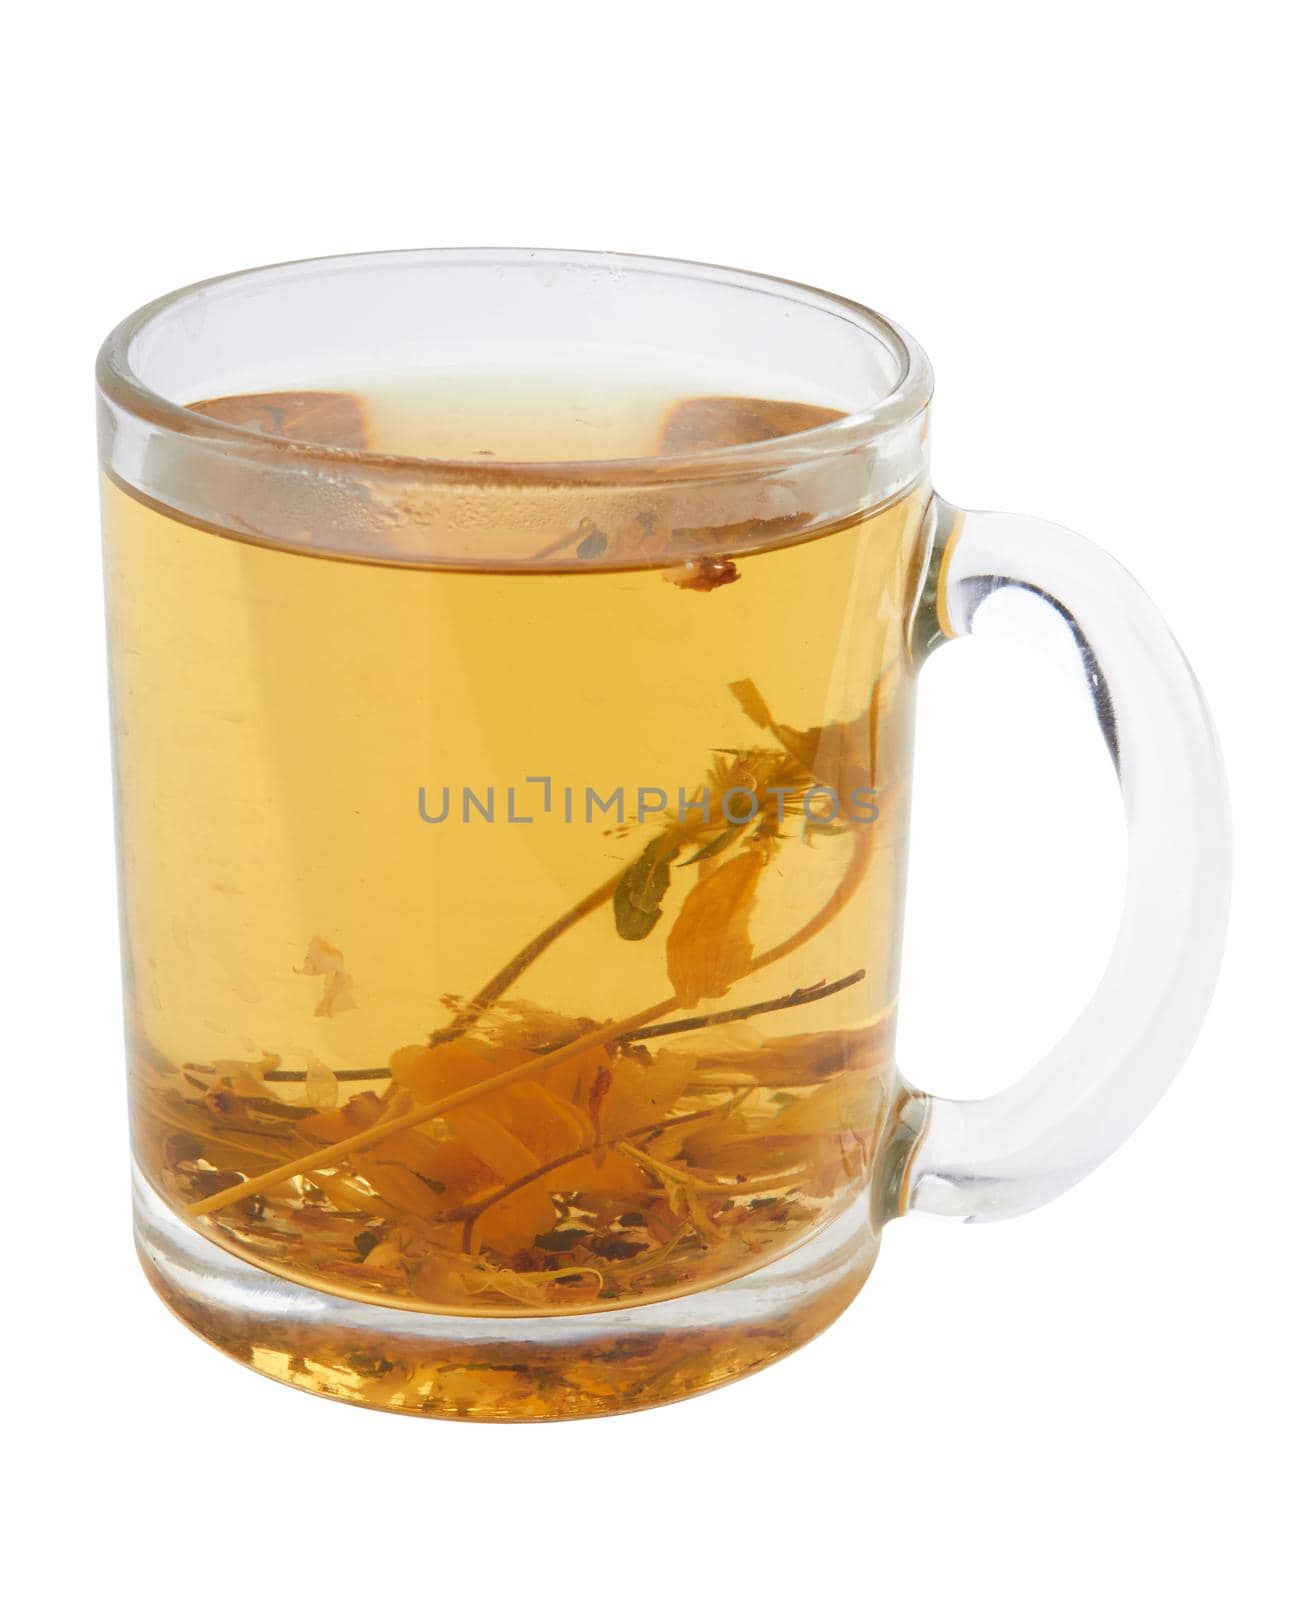 Herbal tea in cup by pioneer111